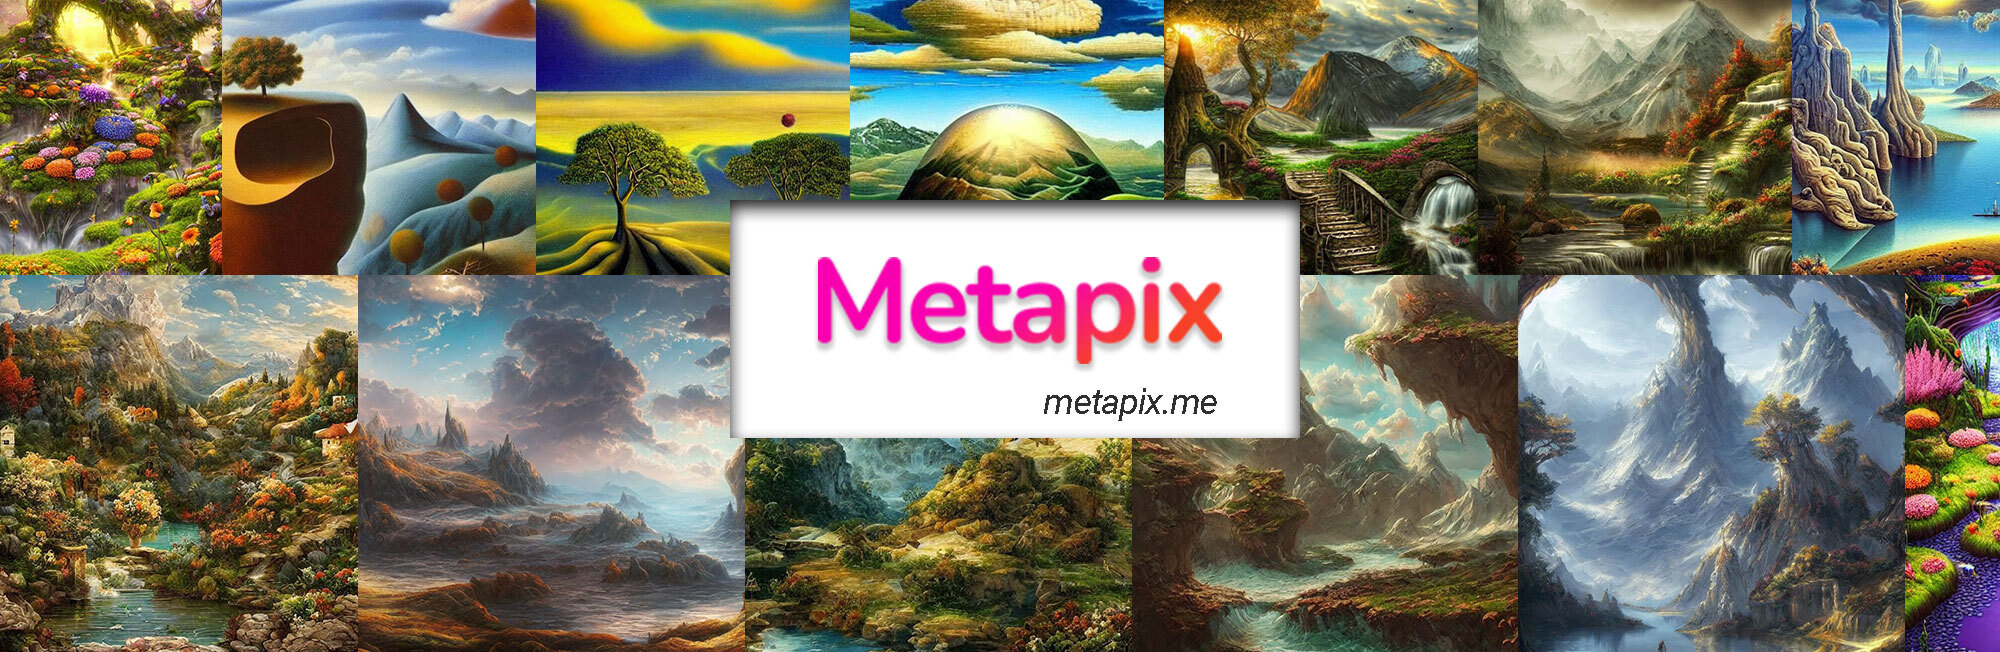 Metapix_ bannière